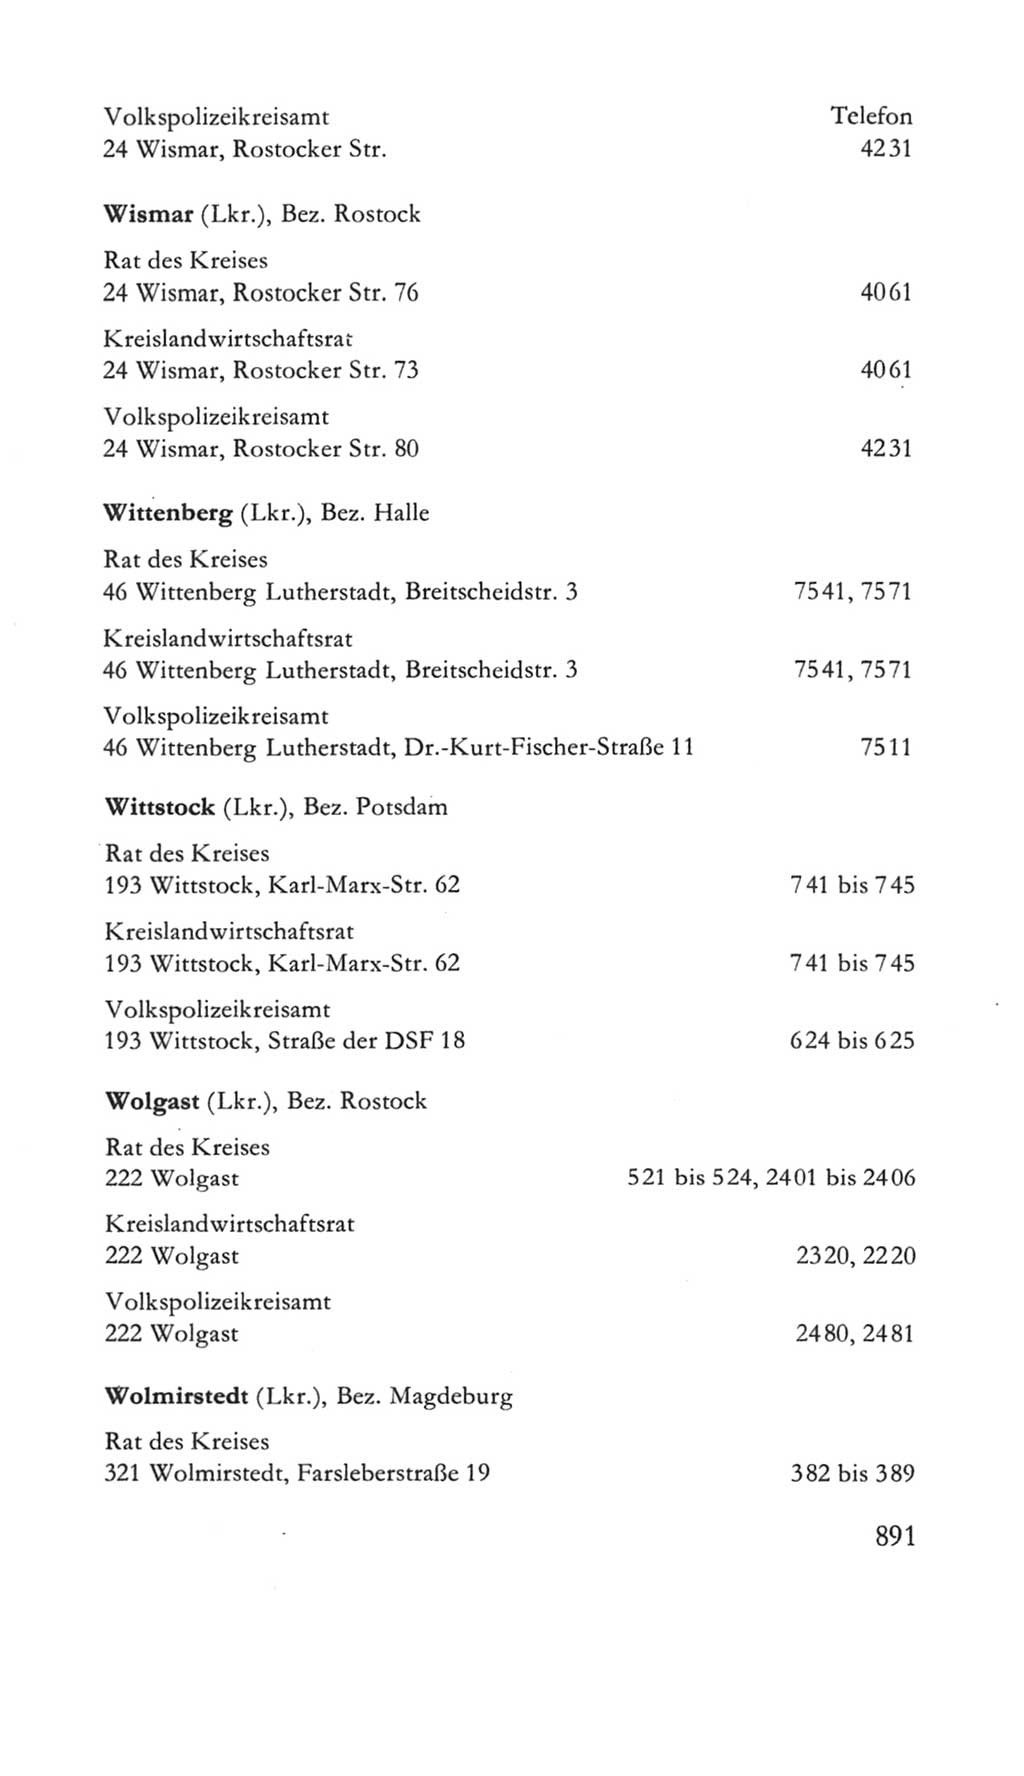 Volkskammer (VK) der Deutschen Demokratischen Republik (DDR) 5. Wahlperiode 1967-1971, Seite 891 (VK. DDR 5. WP. 1967-1971, S. 891)